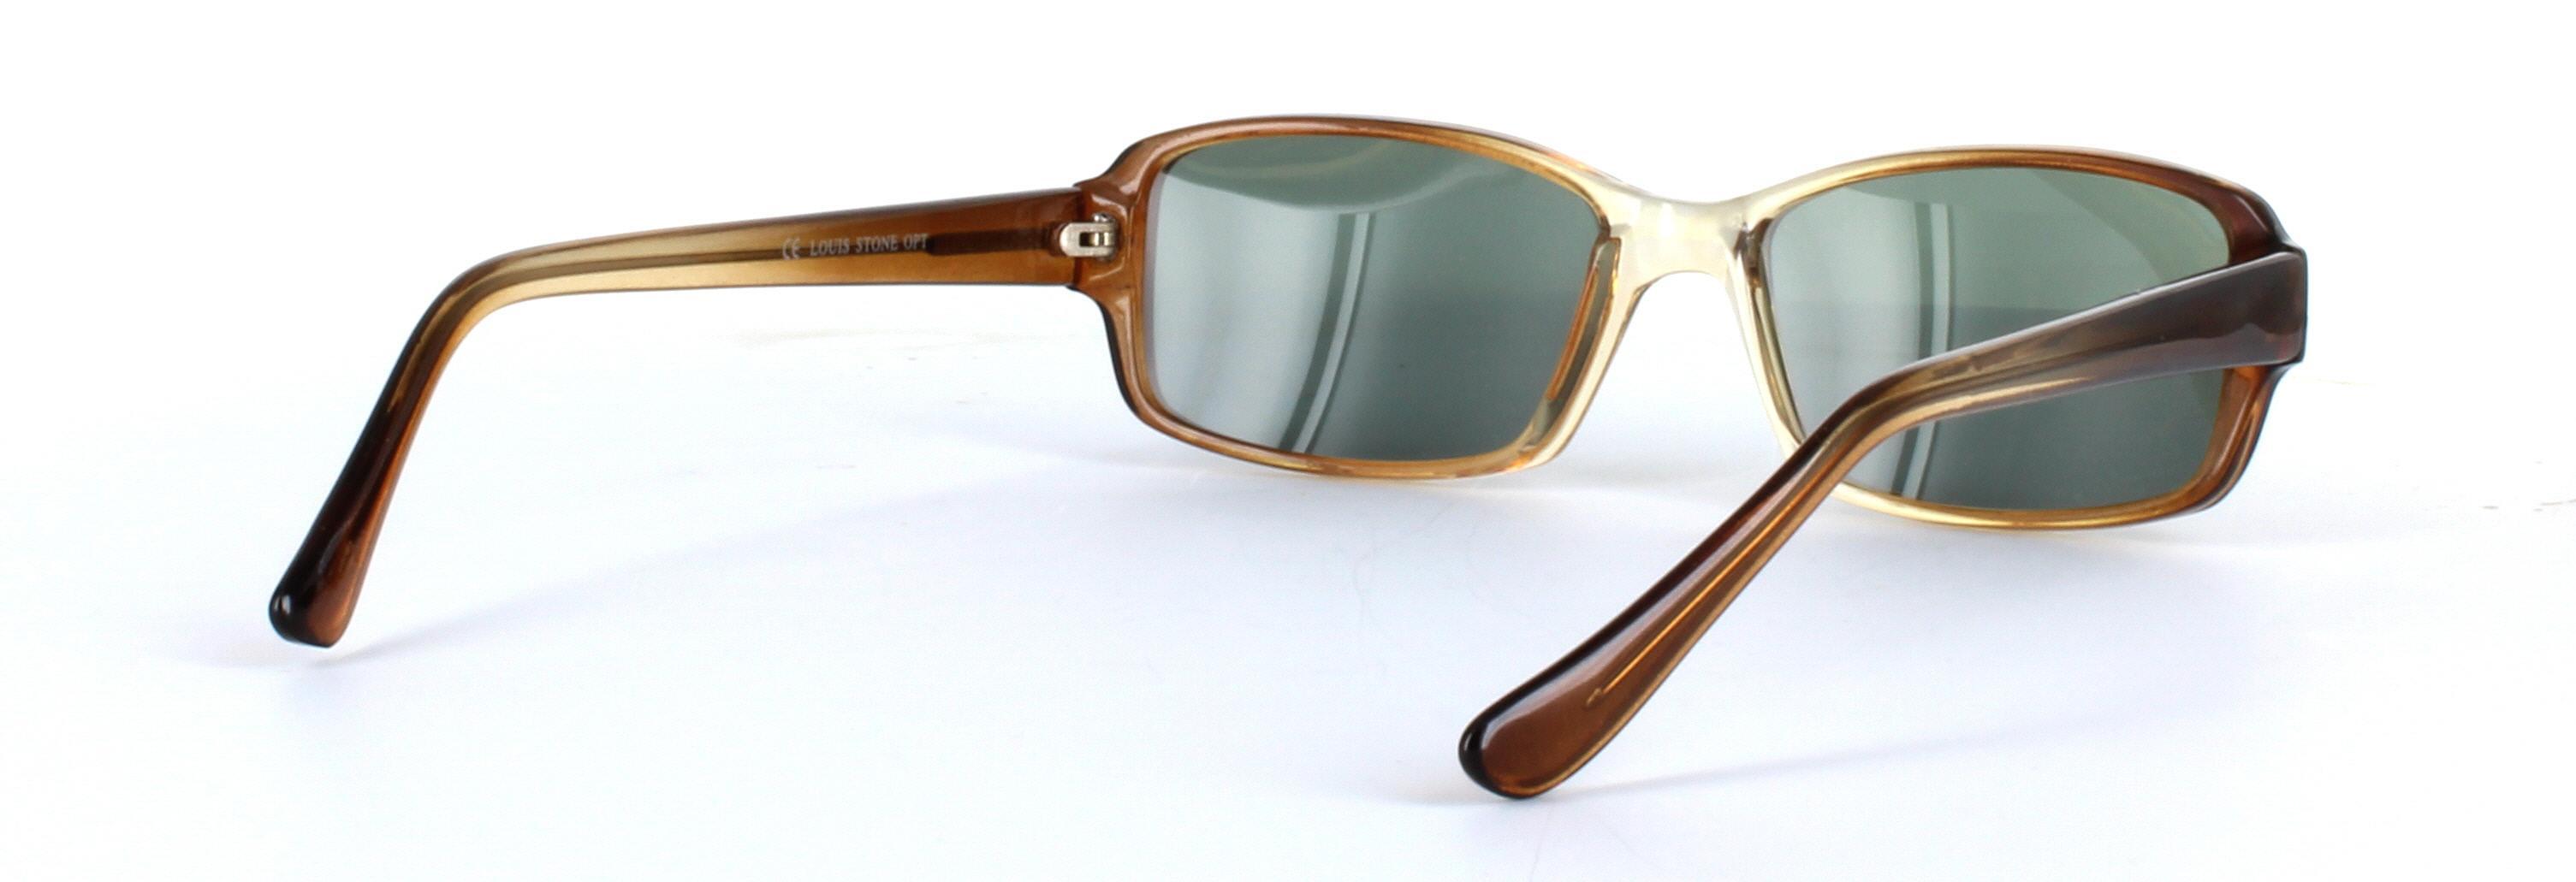 Chico Brown Full Rim Rectangular Plastic Sunglasses - Image View 4